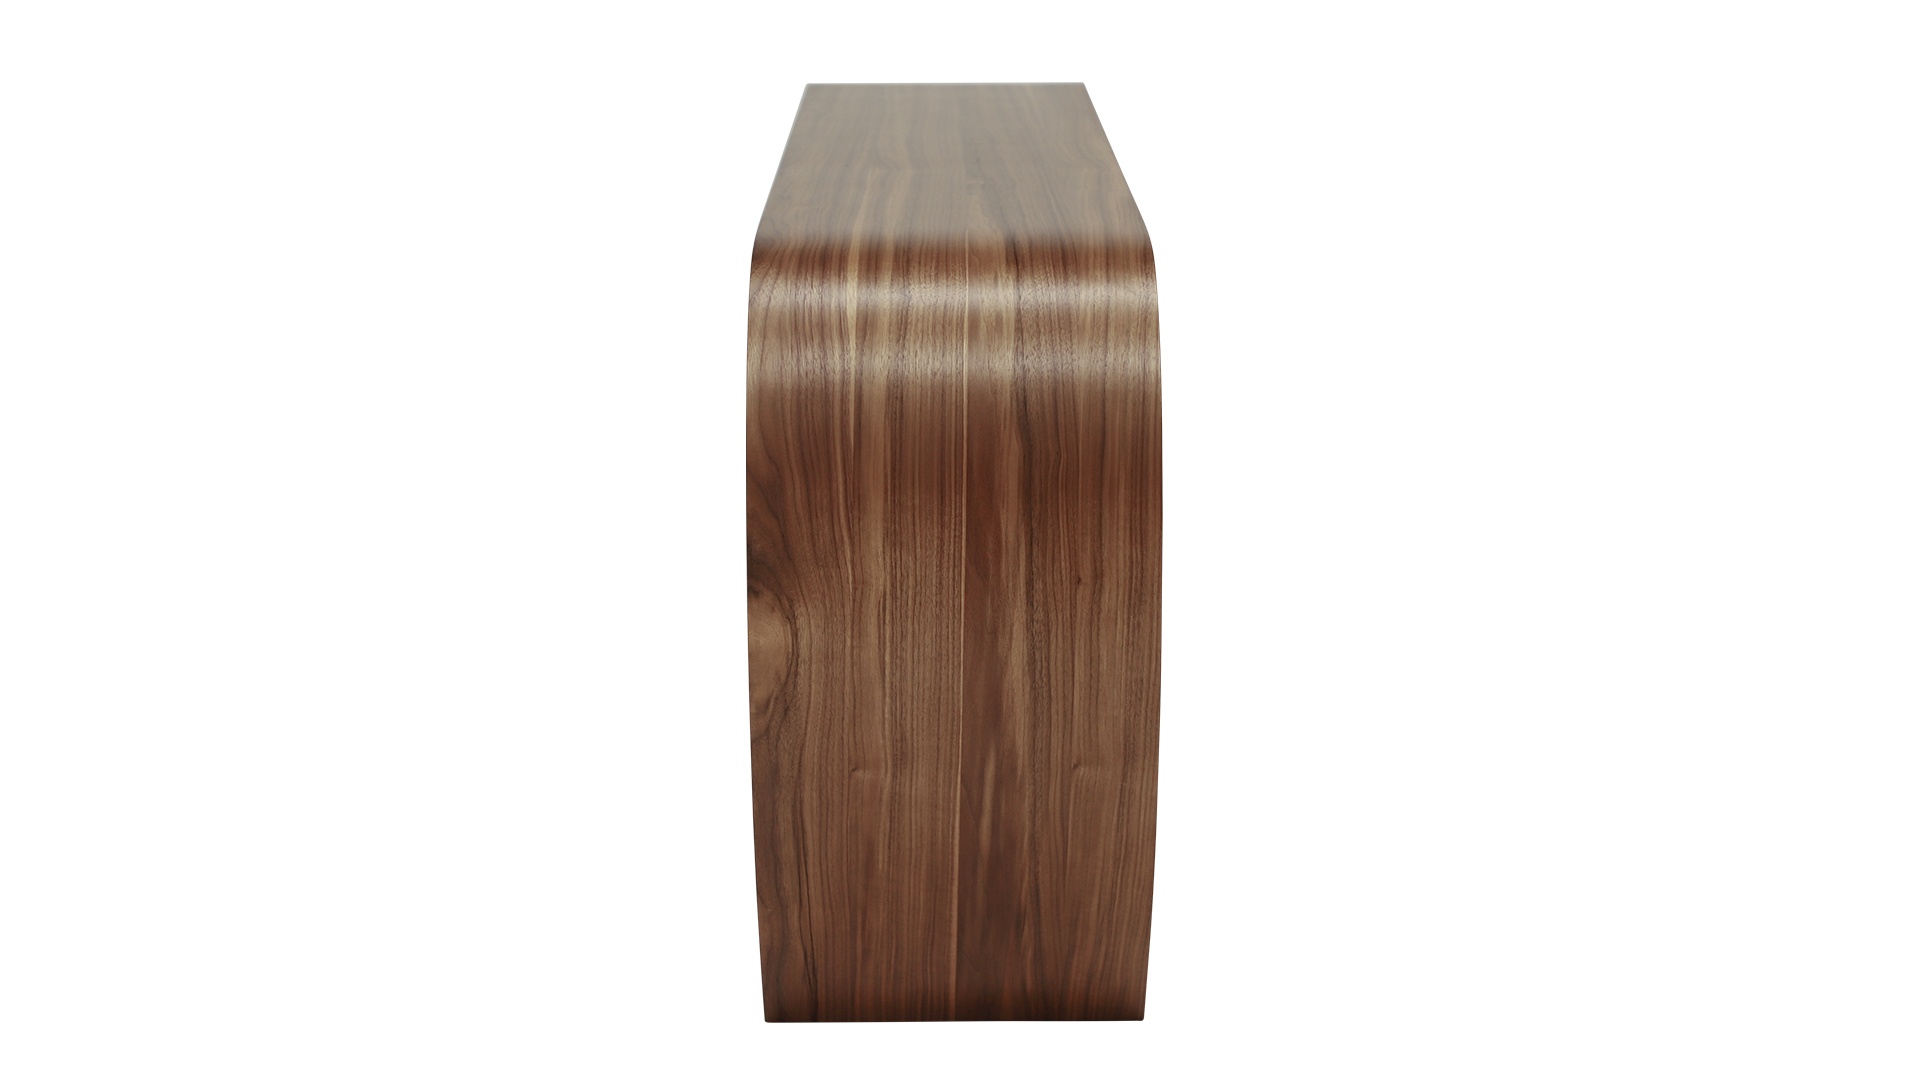 Das Sideboard Sidebow überzeugt mit seiner besonderen Form. Gefertigt wurde das Sideboard aus Echtholzfurnier. Die Farbe ist Nussbaum. Es ist ein Produkt der Marke Jan Kurtz und hat eine Breite von 123 cm.